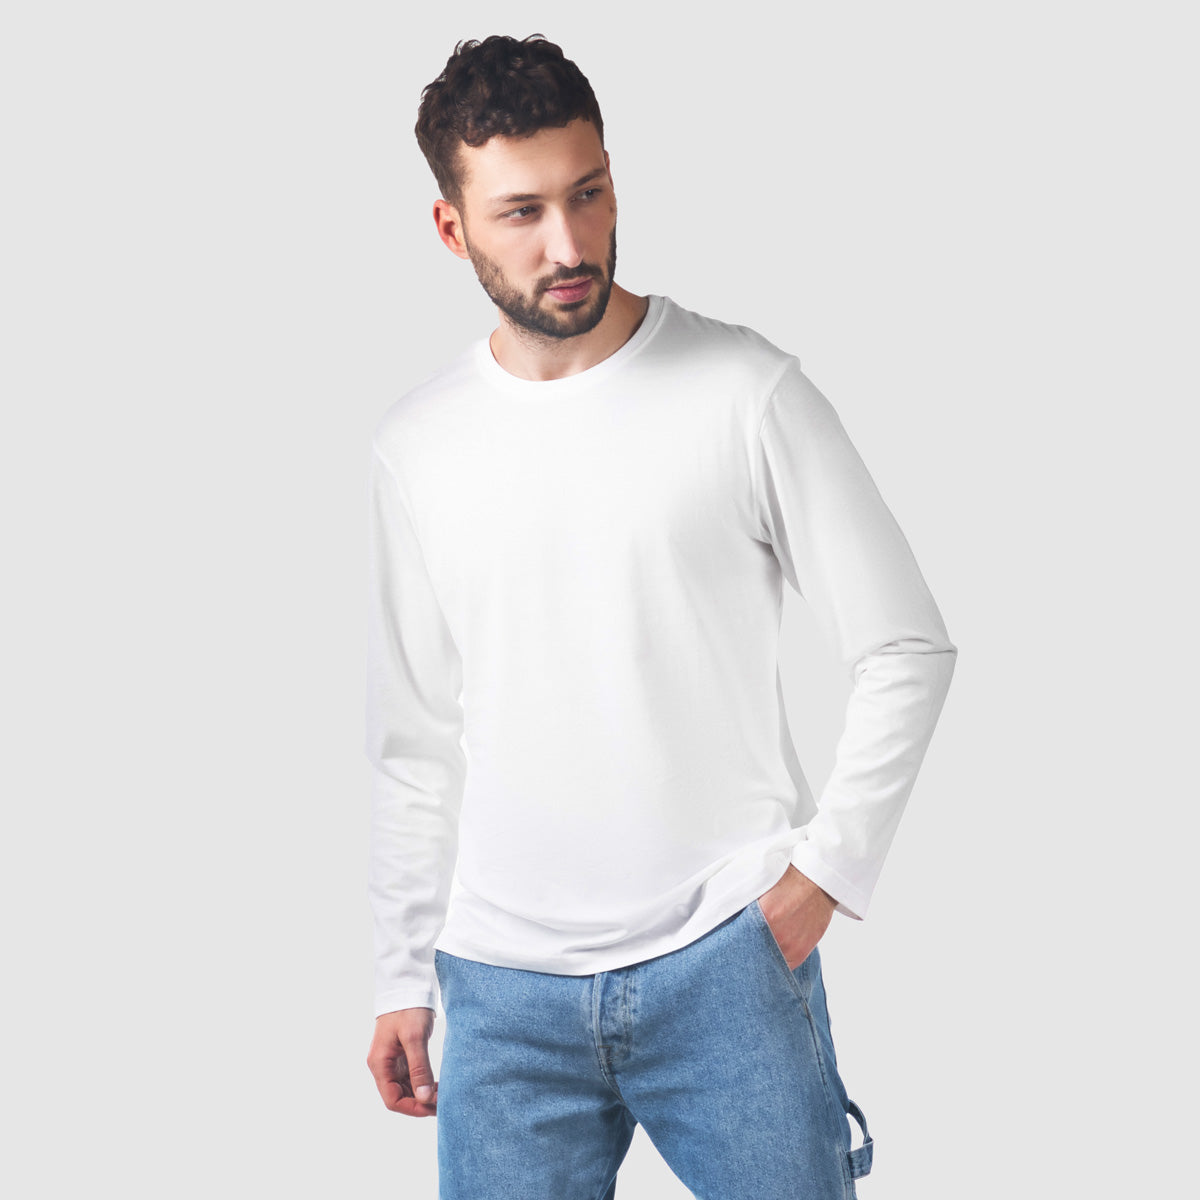 Abbigliamento sostenibile Svizzera, manica lunga, t-shirt manica lunga, t-shirt, t-shirt uomo, tshirt lunga, tshirt oversize, tessuto riciclato, top riciclato, t-shirt bianca